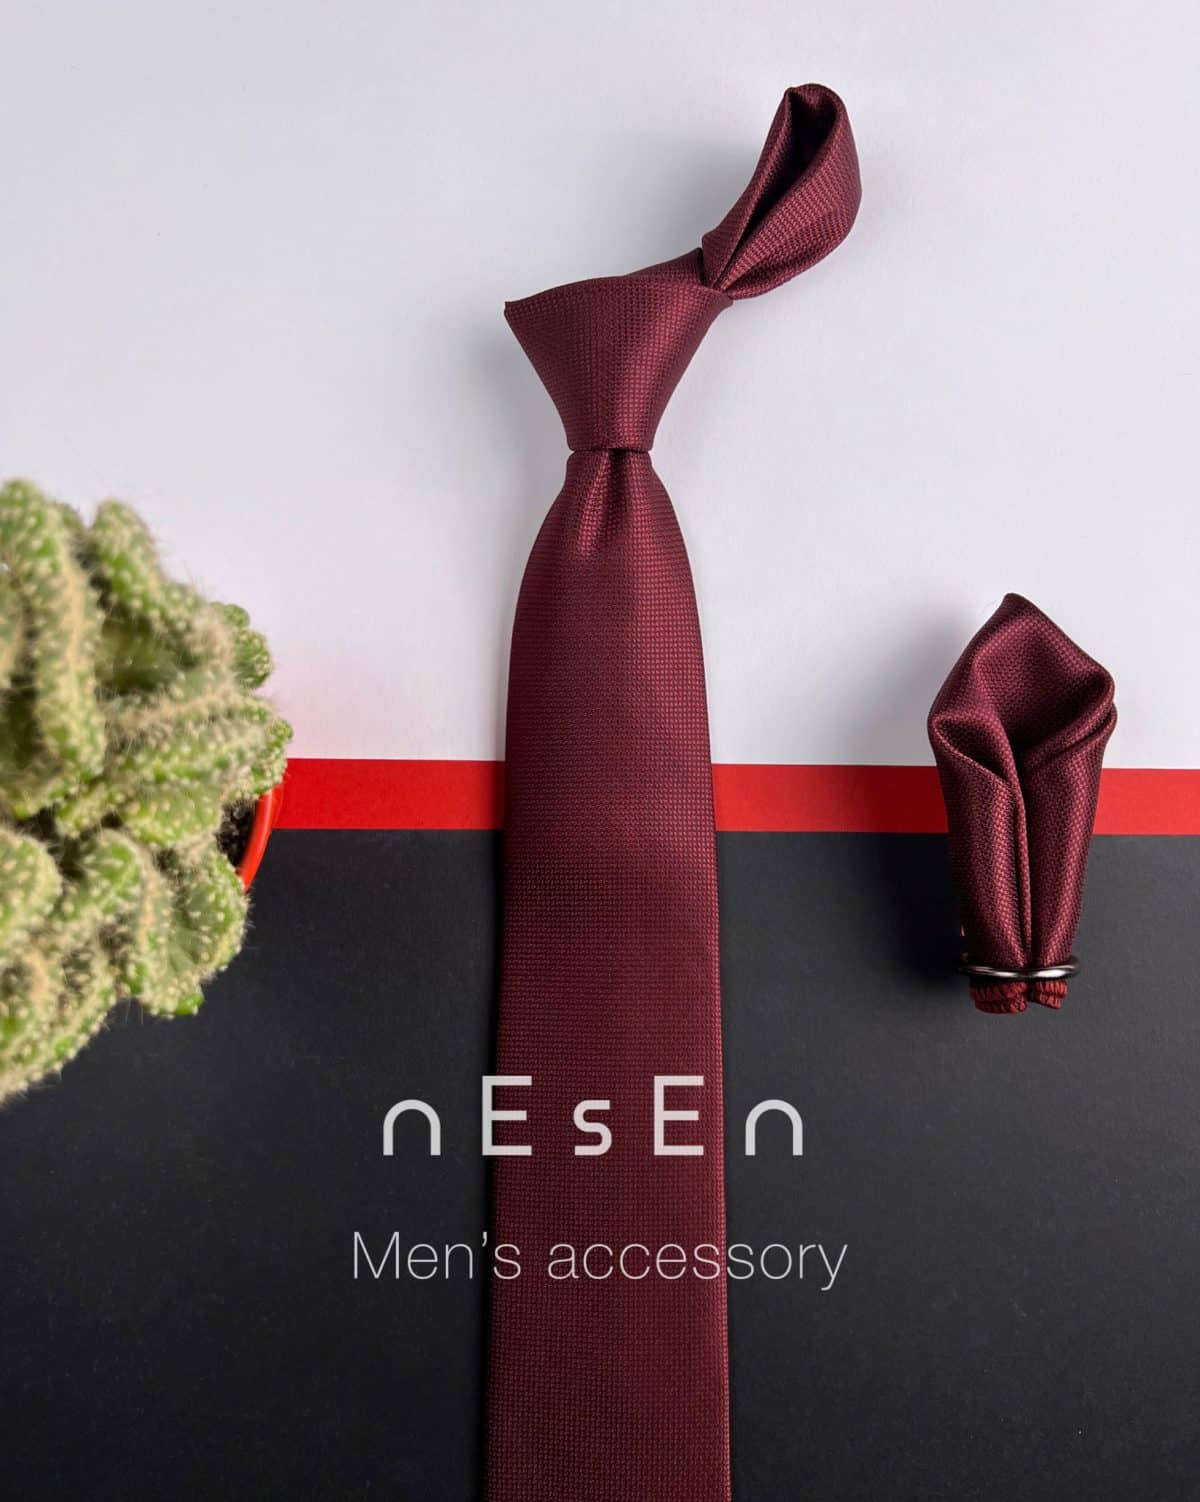 ست کراوات و دستمال جیب زرشکی ساده نسن